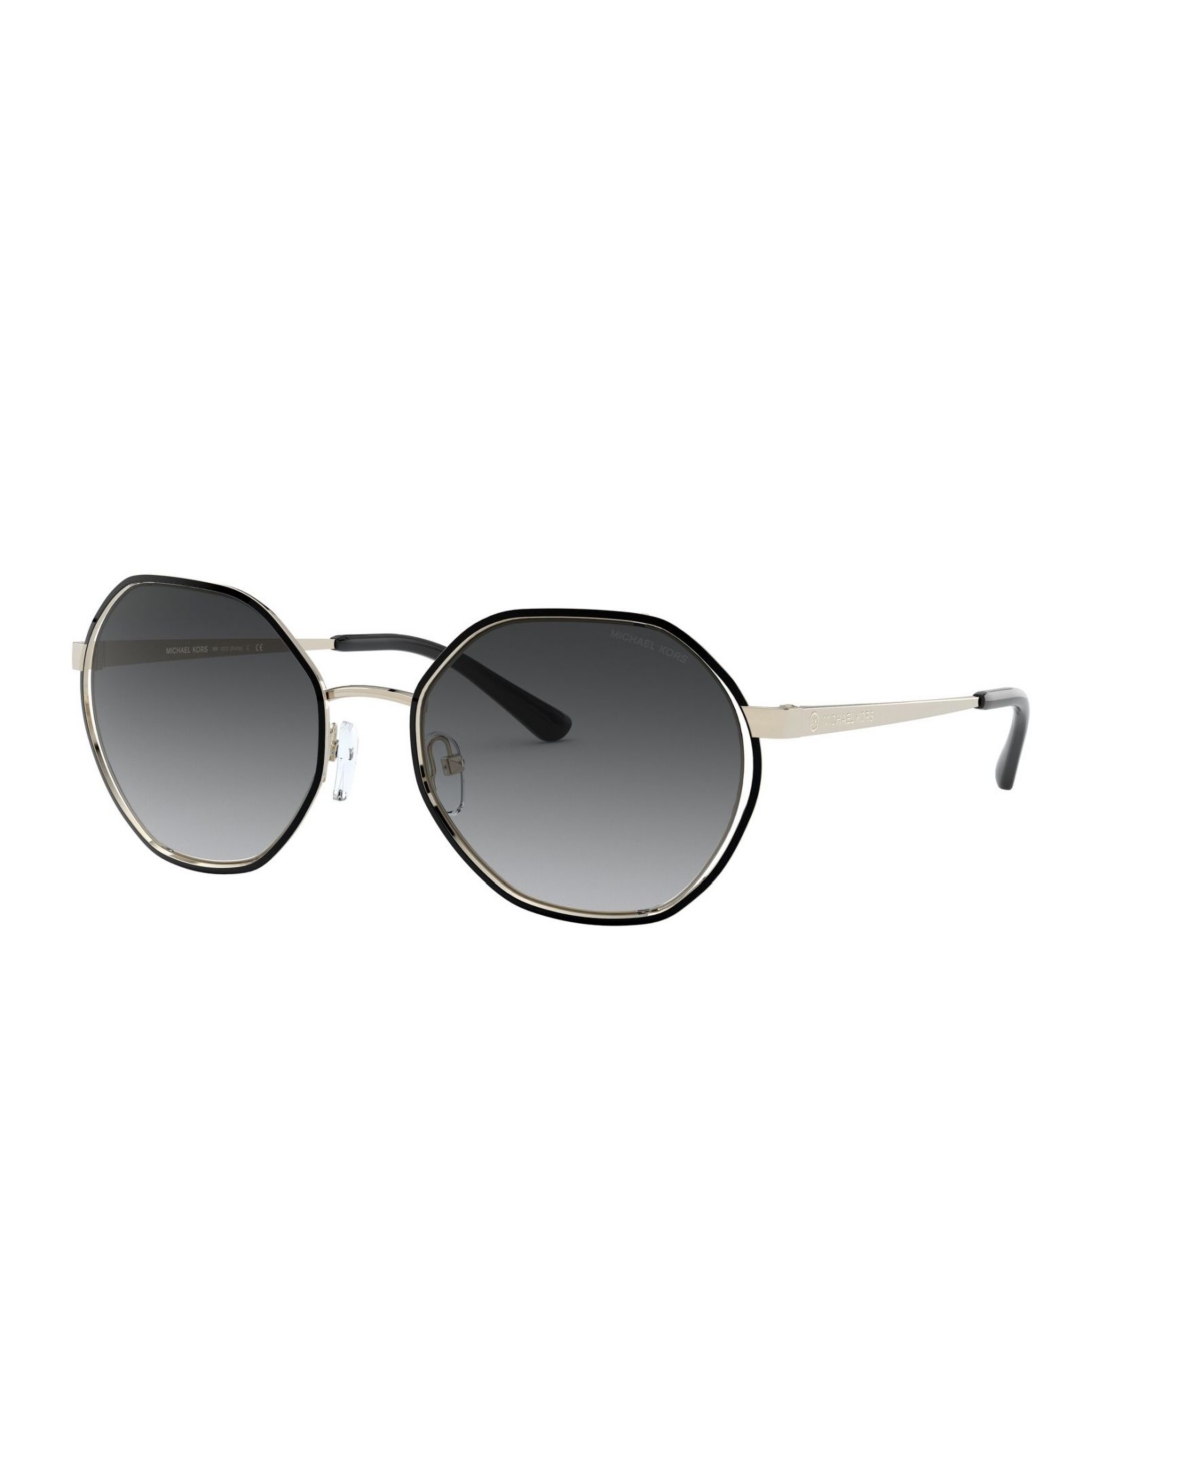 Michael Kors Sunglasses, Mk1072 In Lt Gold